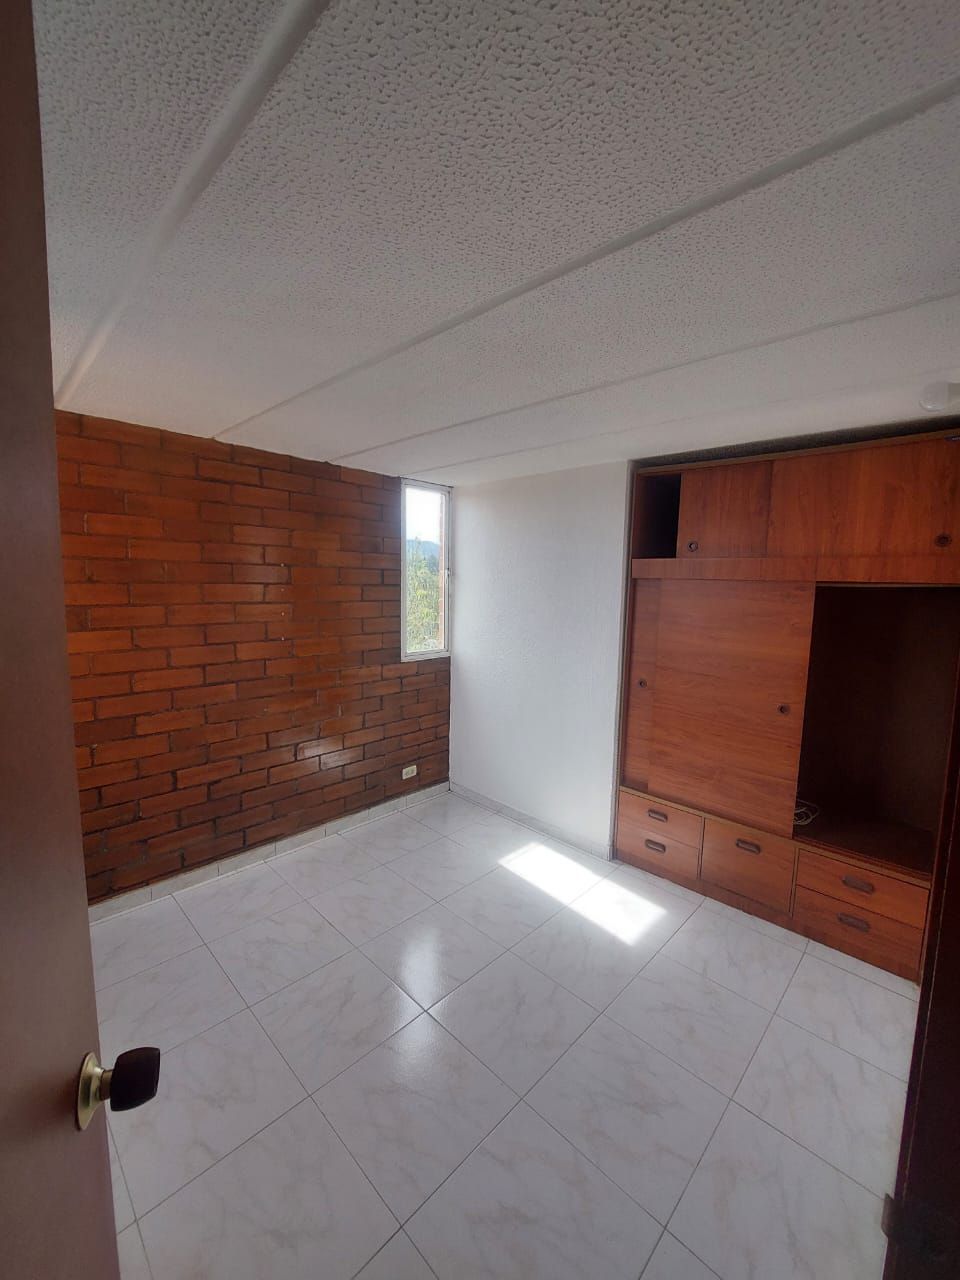 Apartamento en arriendo Rincón de Santa Inés 52 m² - $ 1.000.000